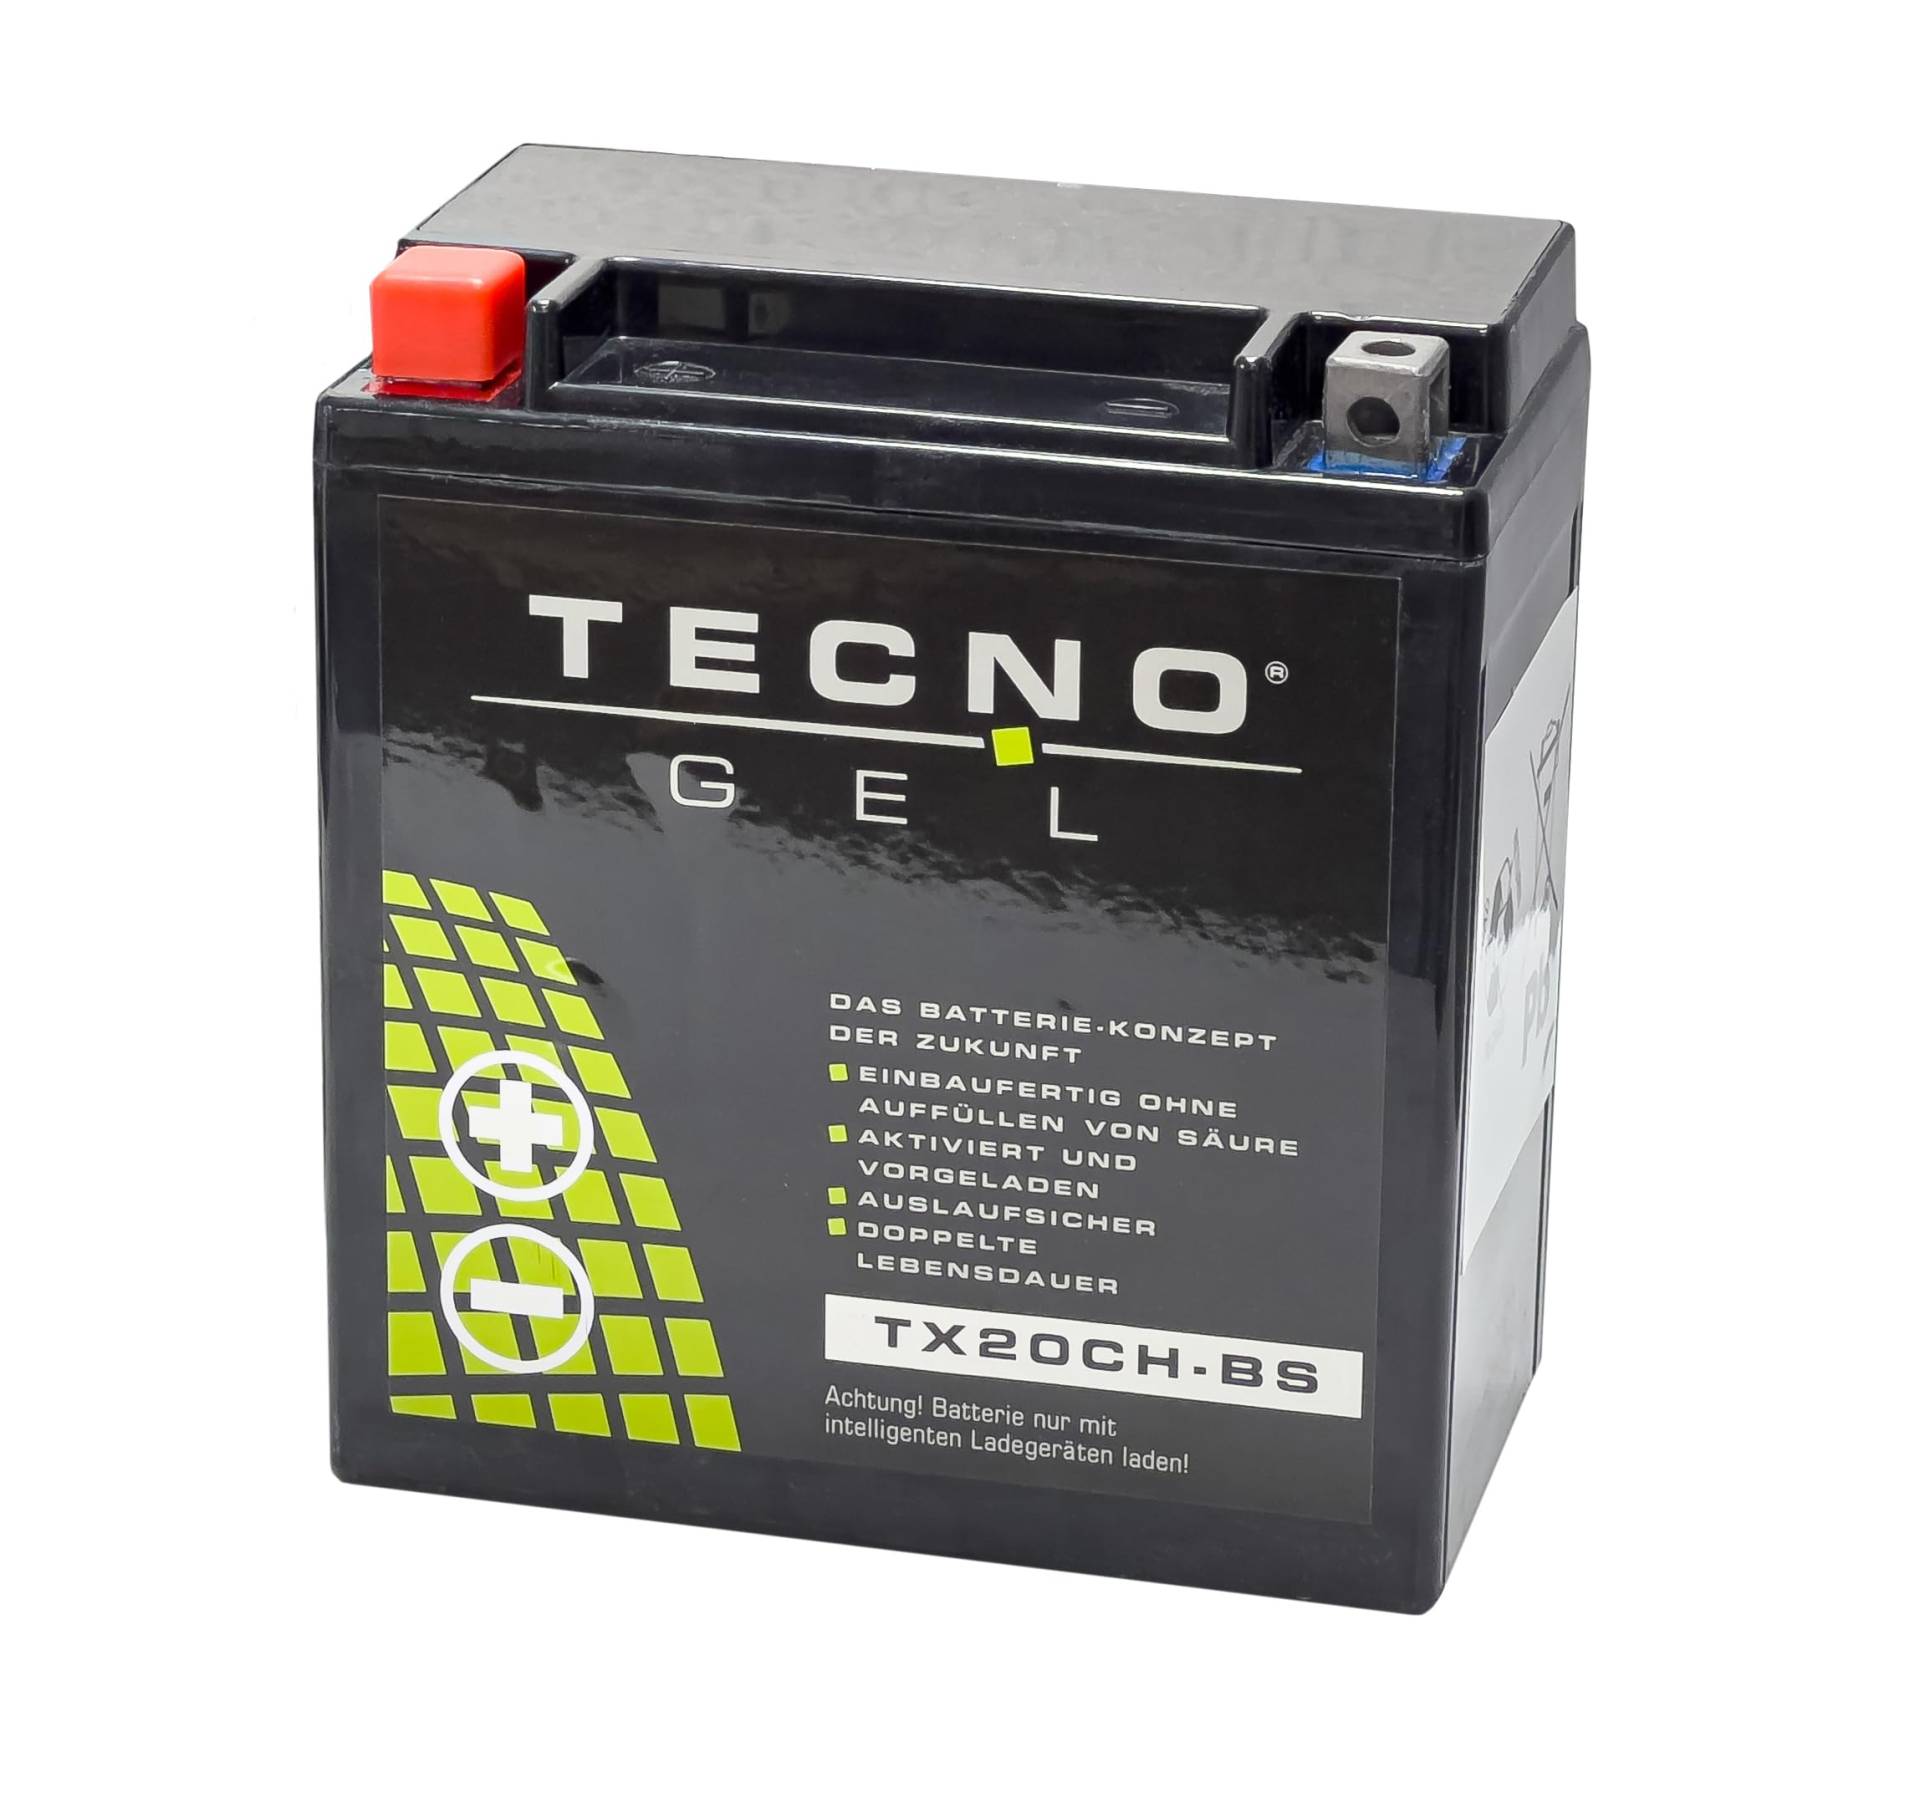 TECNO-GEL Motorrad-Batterie für YTX20CH-BS für MOTO GUZZI Norge 1200 2006-2017, 12V Gel-Batterie 18Ah, 150x87x161 mm von Wirth-Federn